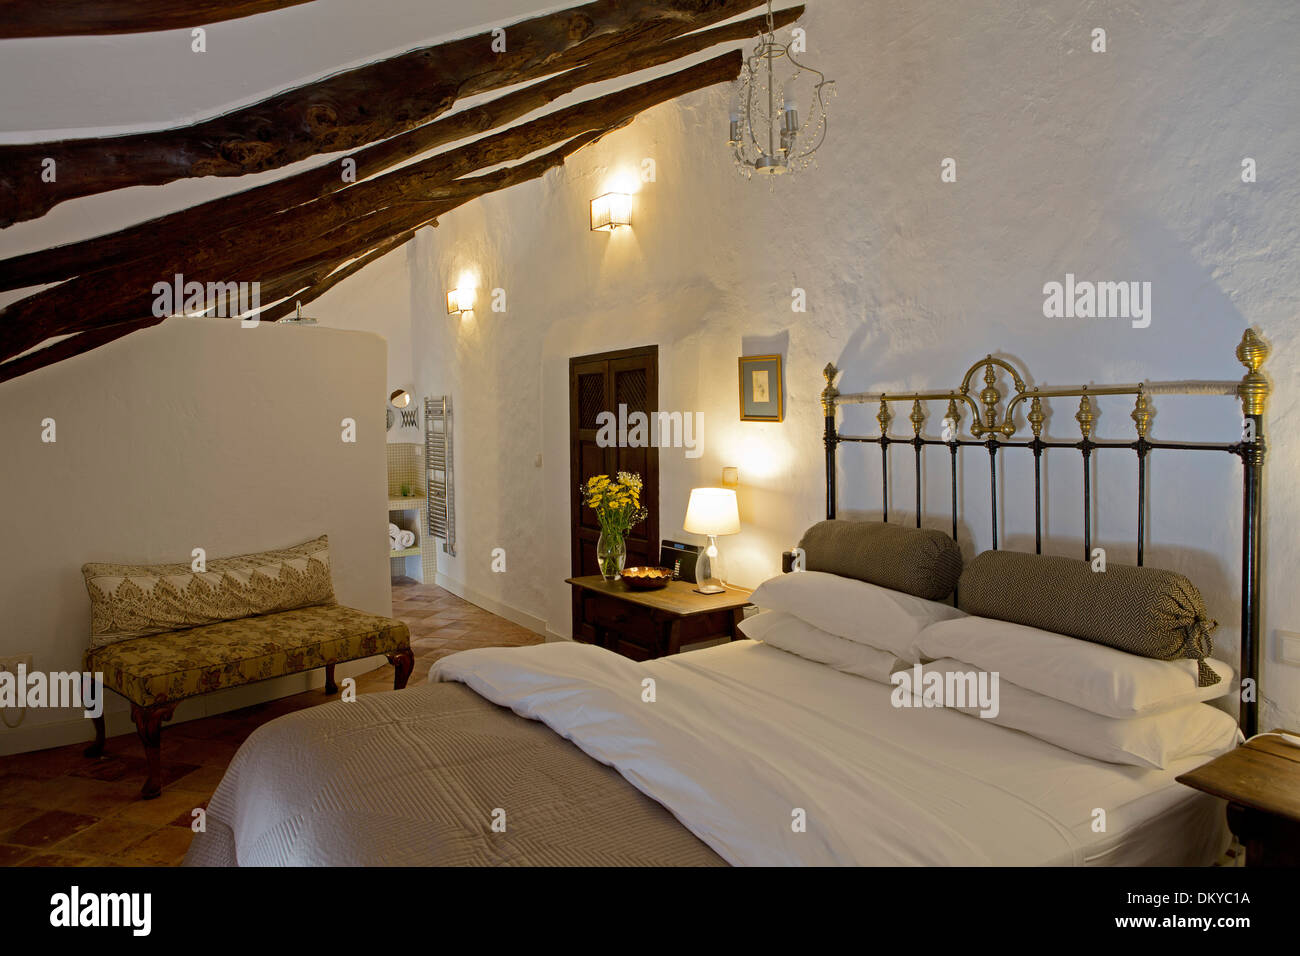 Almohalla 51, Archidona, Spanien. Architekt: keine, 2013. Schlafzimmer. Stockfoto